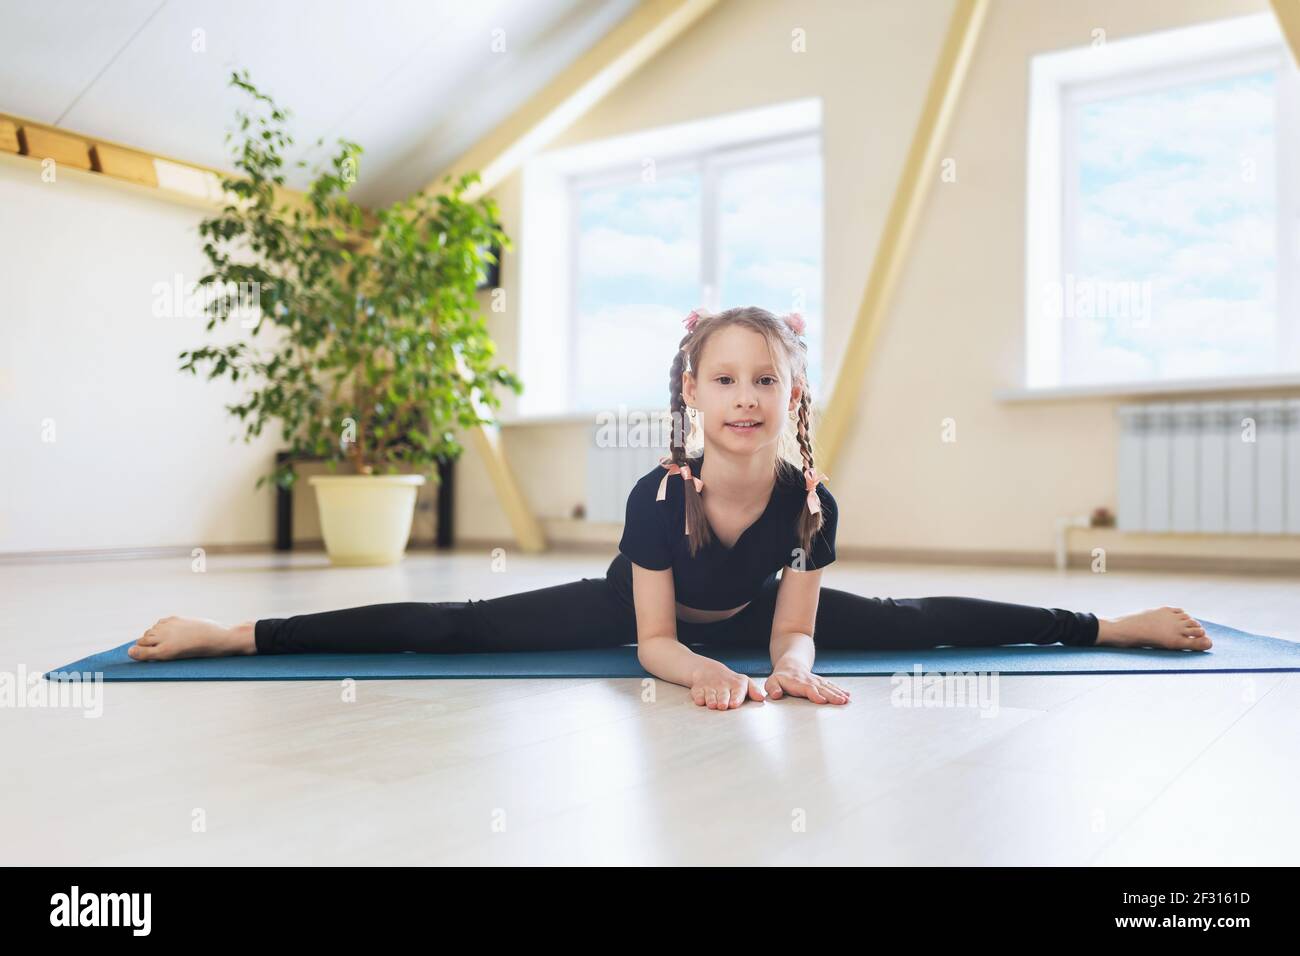 Ein glückliches kleines Mädchen in schwarzer Sportkleidung, das Yoga praktiziert, führt einen Querspalt auf einer Gymnastikmatte, der Samokanasana Übung, durch. Stockfoto